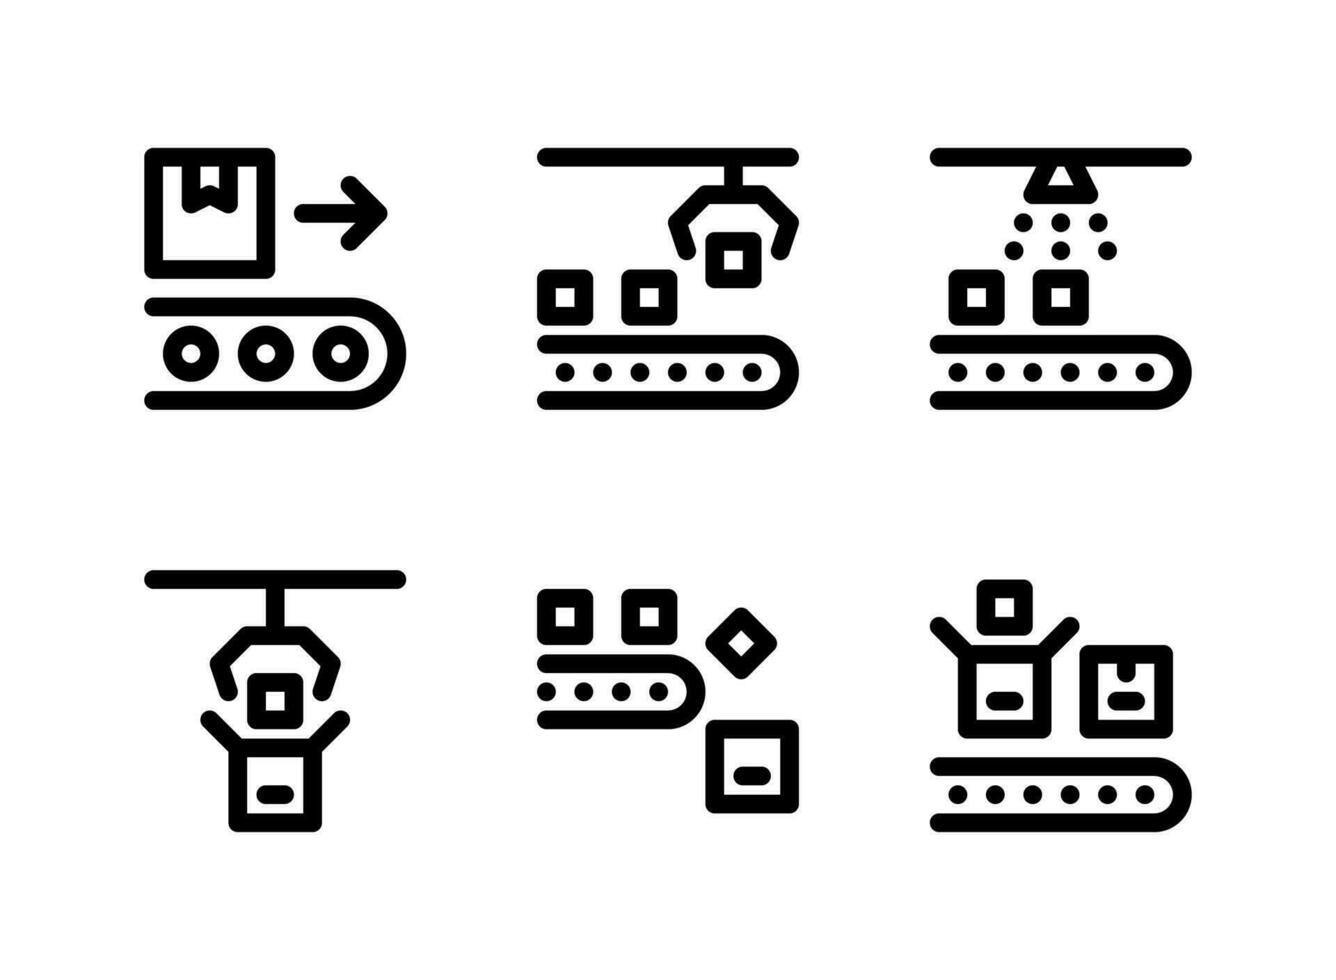 semplice set di icone di linee vettoriali relative alla fabbrica. contiene icone come trasportatore, macchina automatica, imballaggio e altro ancora.